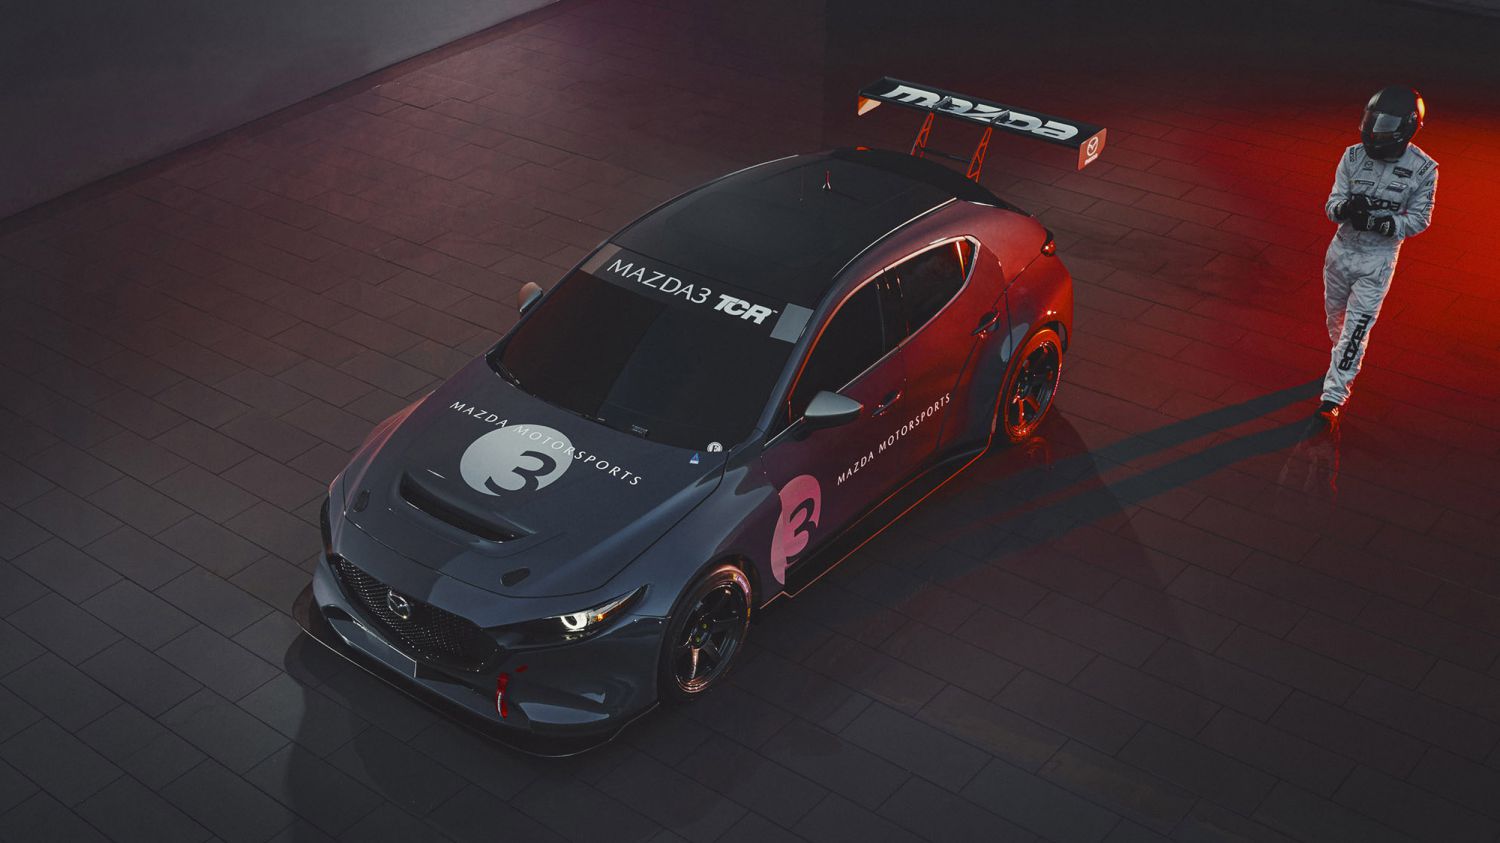 Mazda направляется в Daytona со свирепым гоночным автомобилем Mazda3 TCR